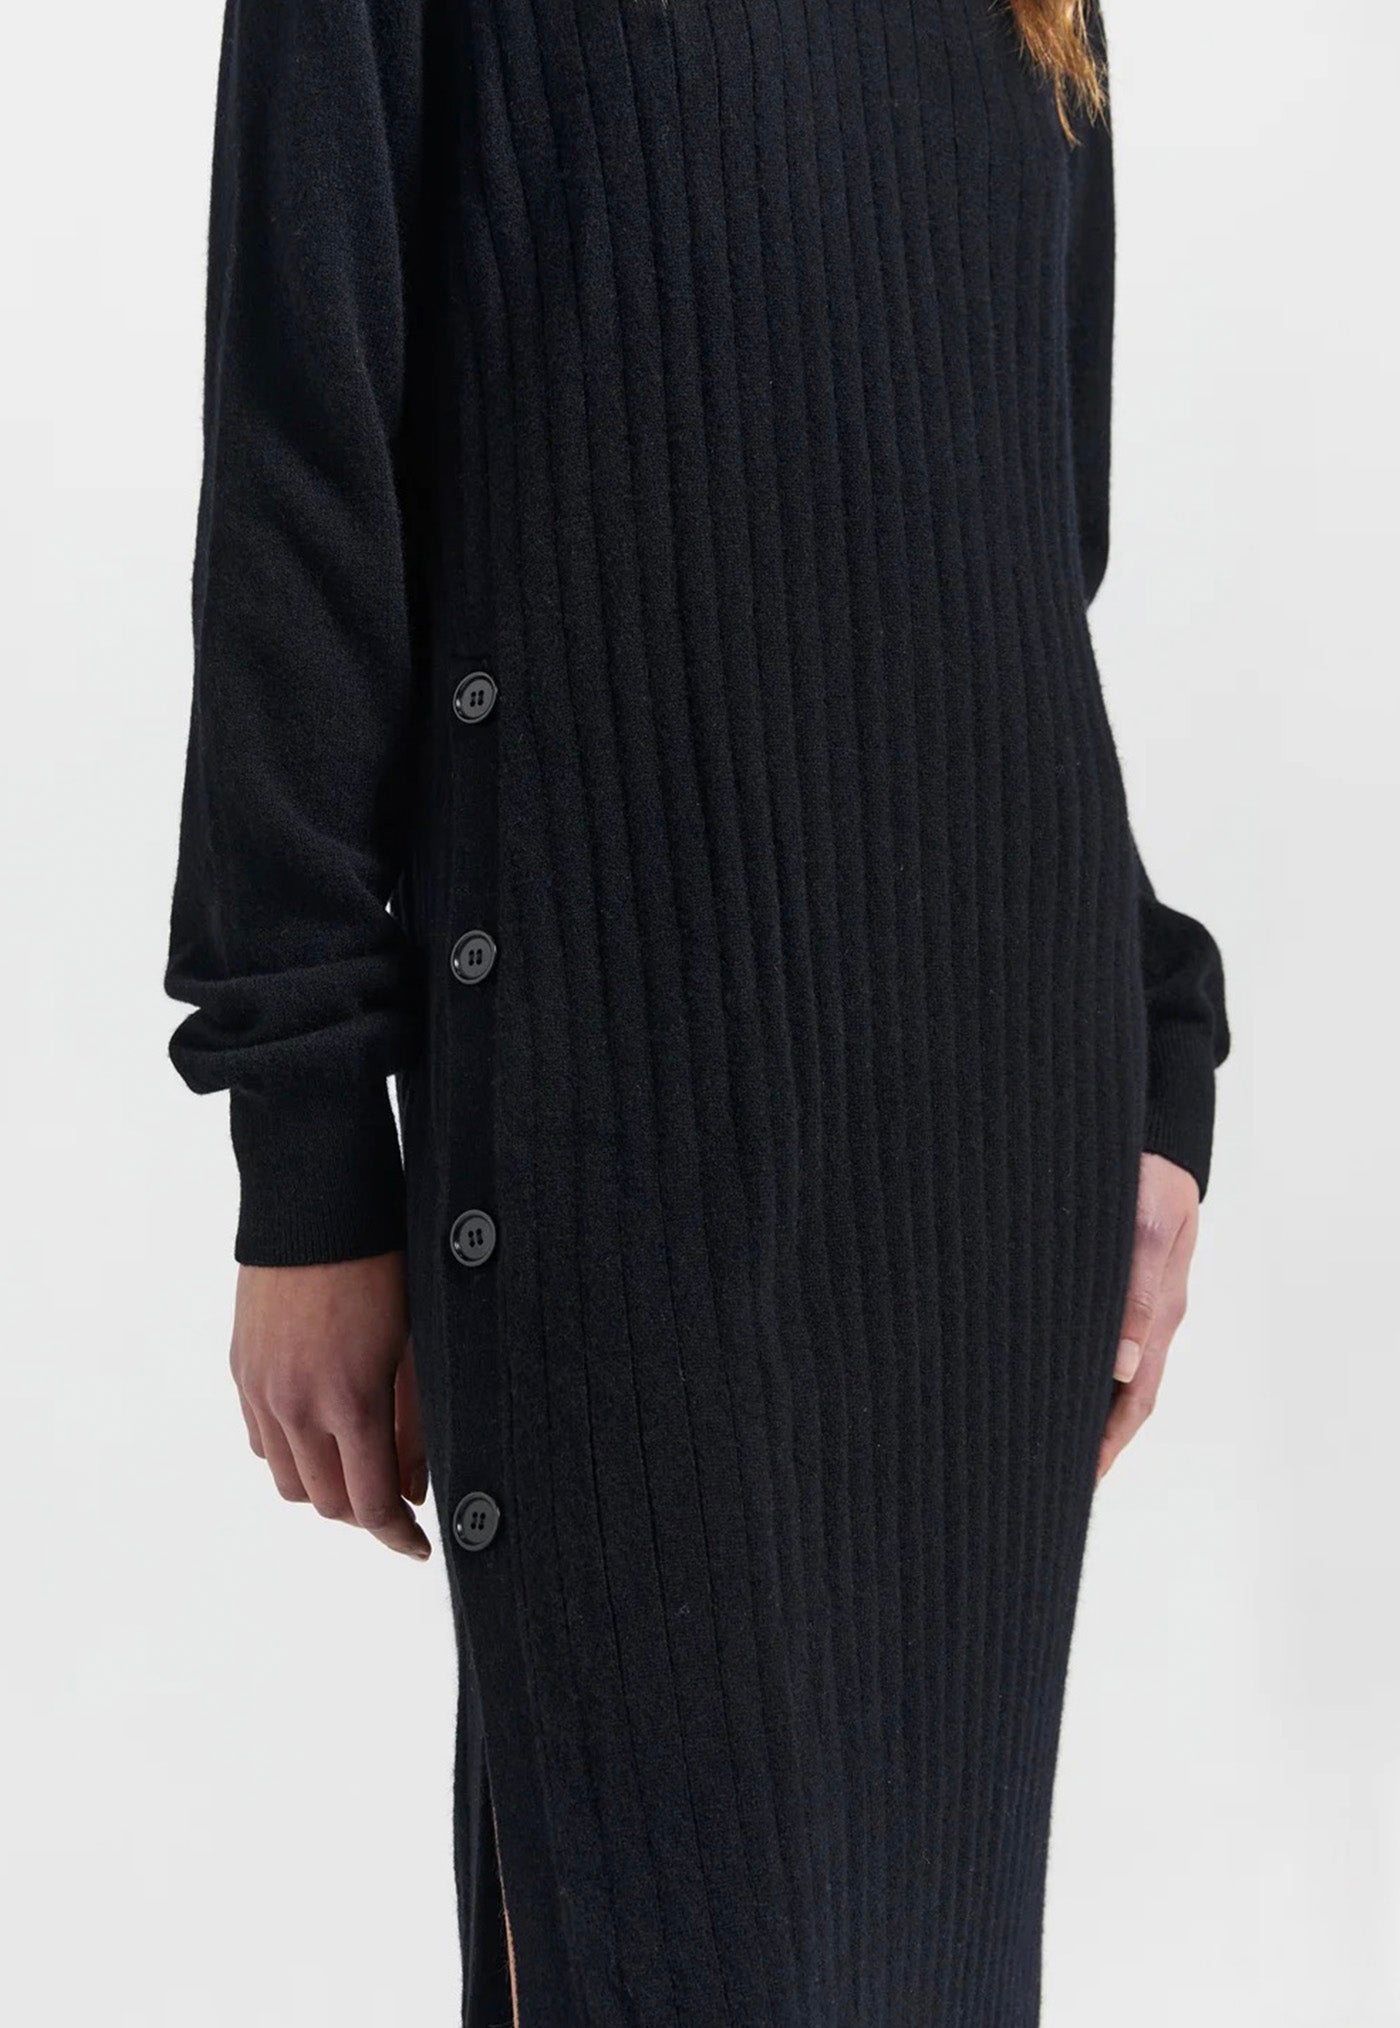 Nina Cashmere Turtleneck Dress - Black sold by Angel Divine